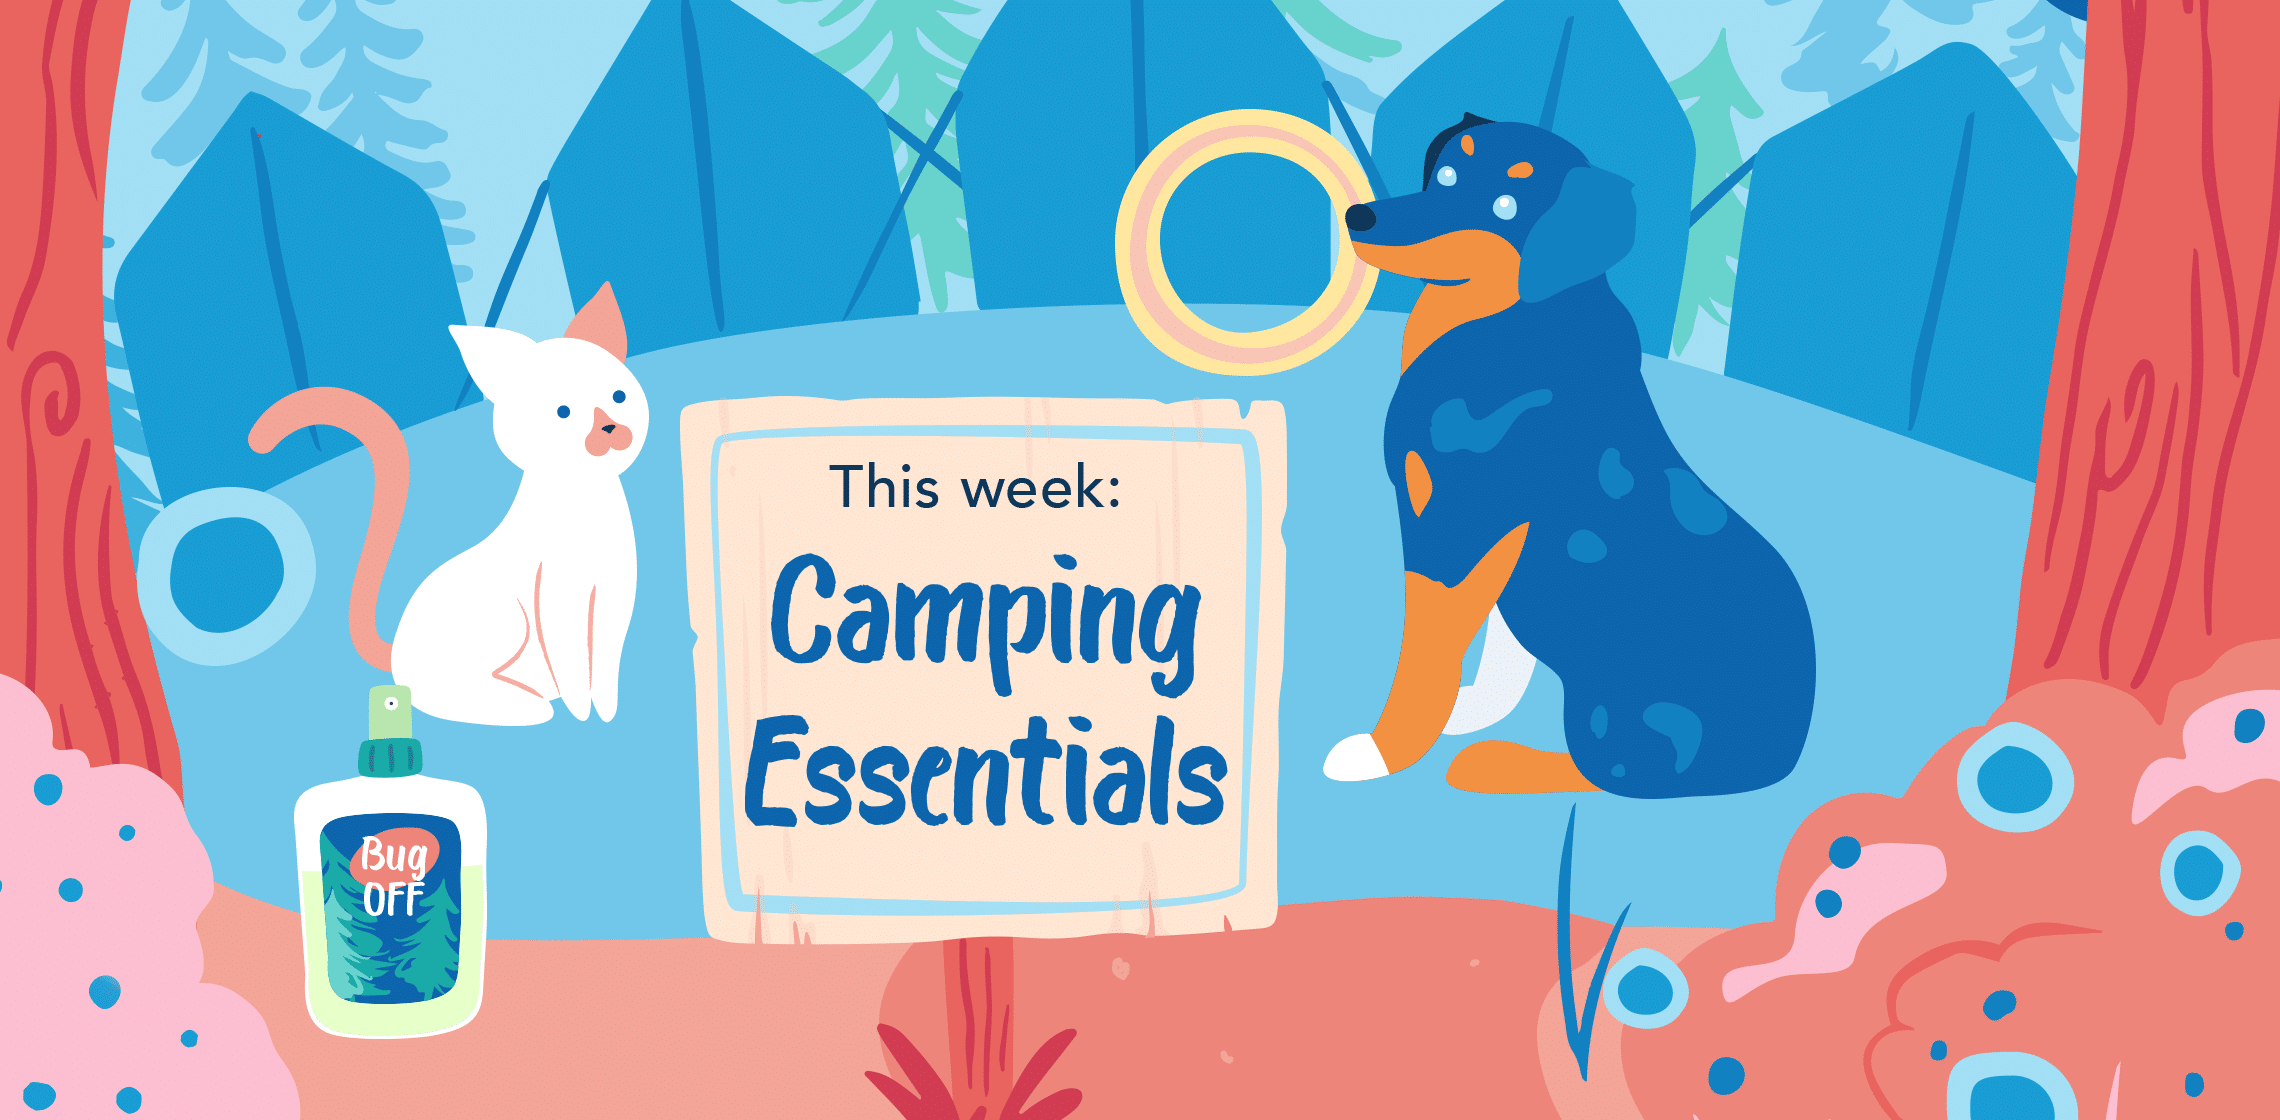 Camp Shopkick: Camping Week